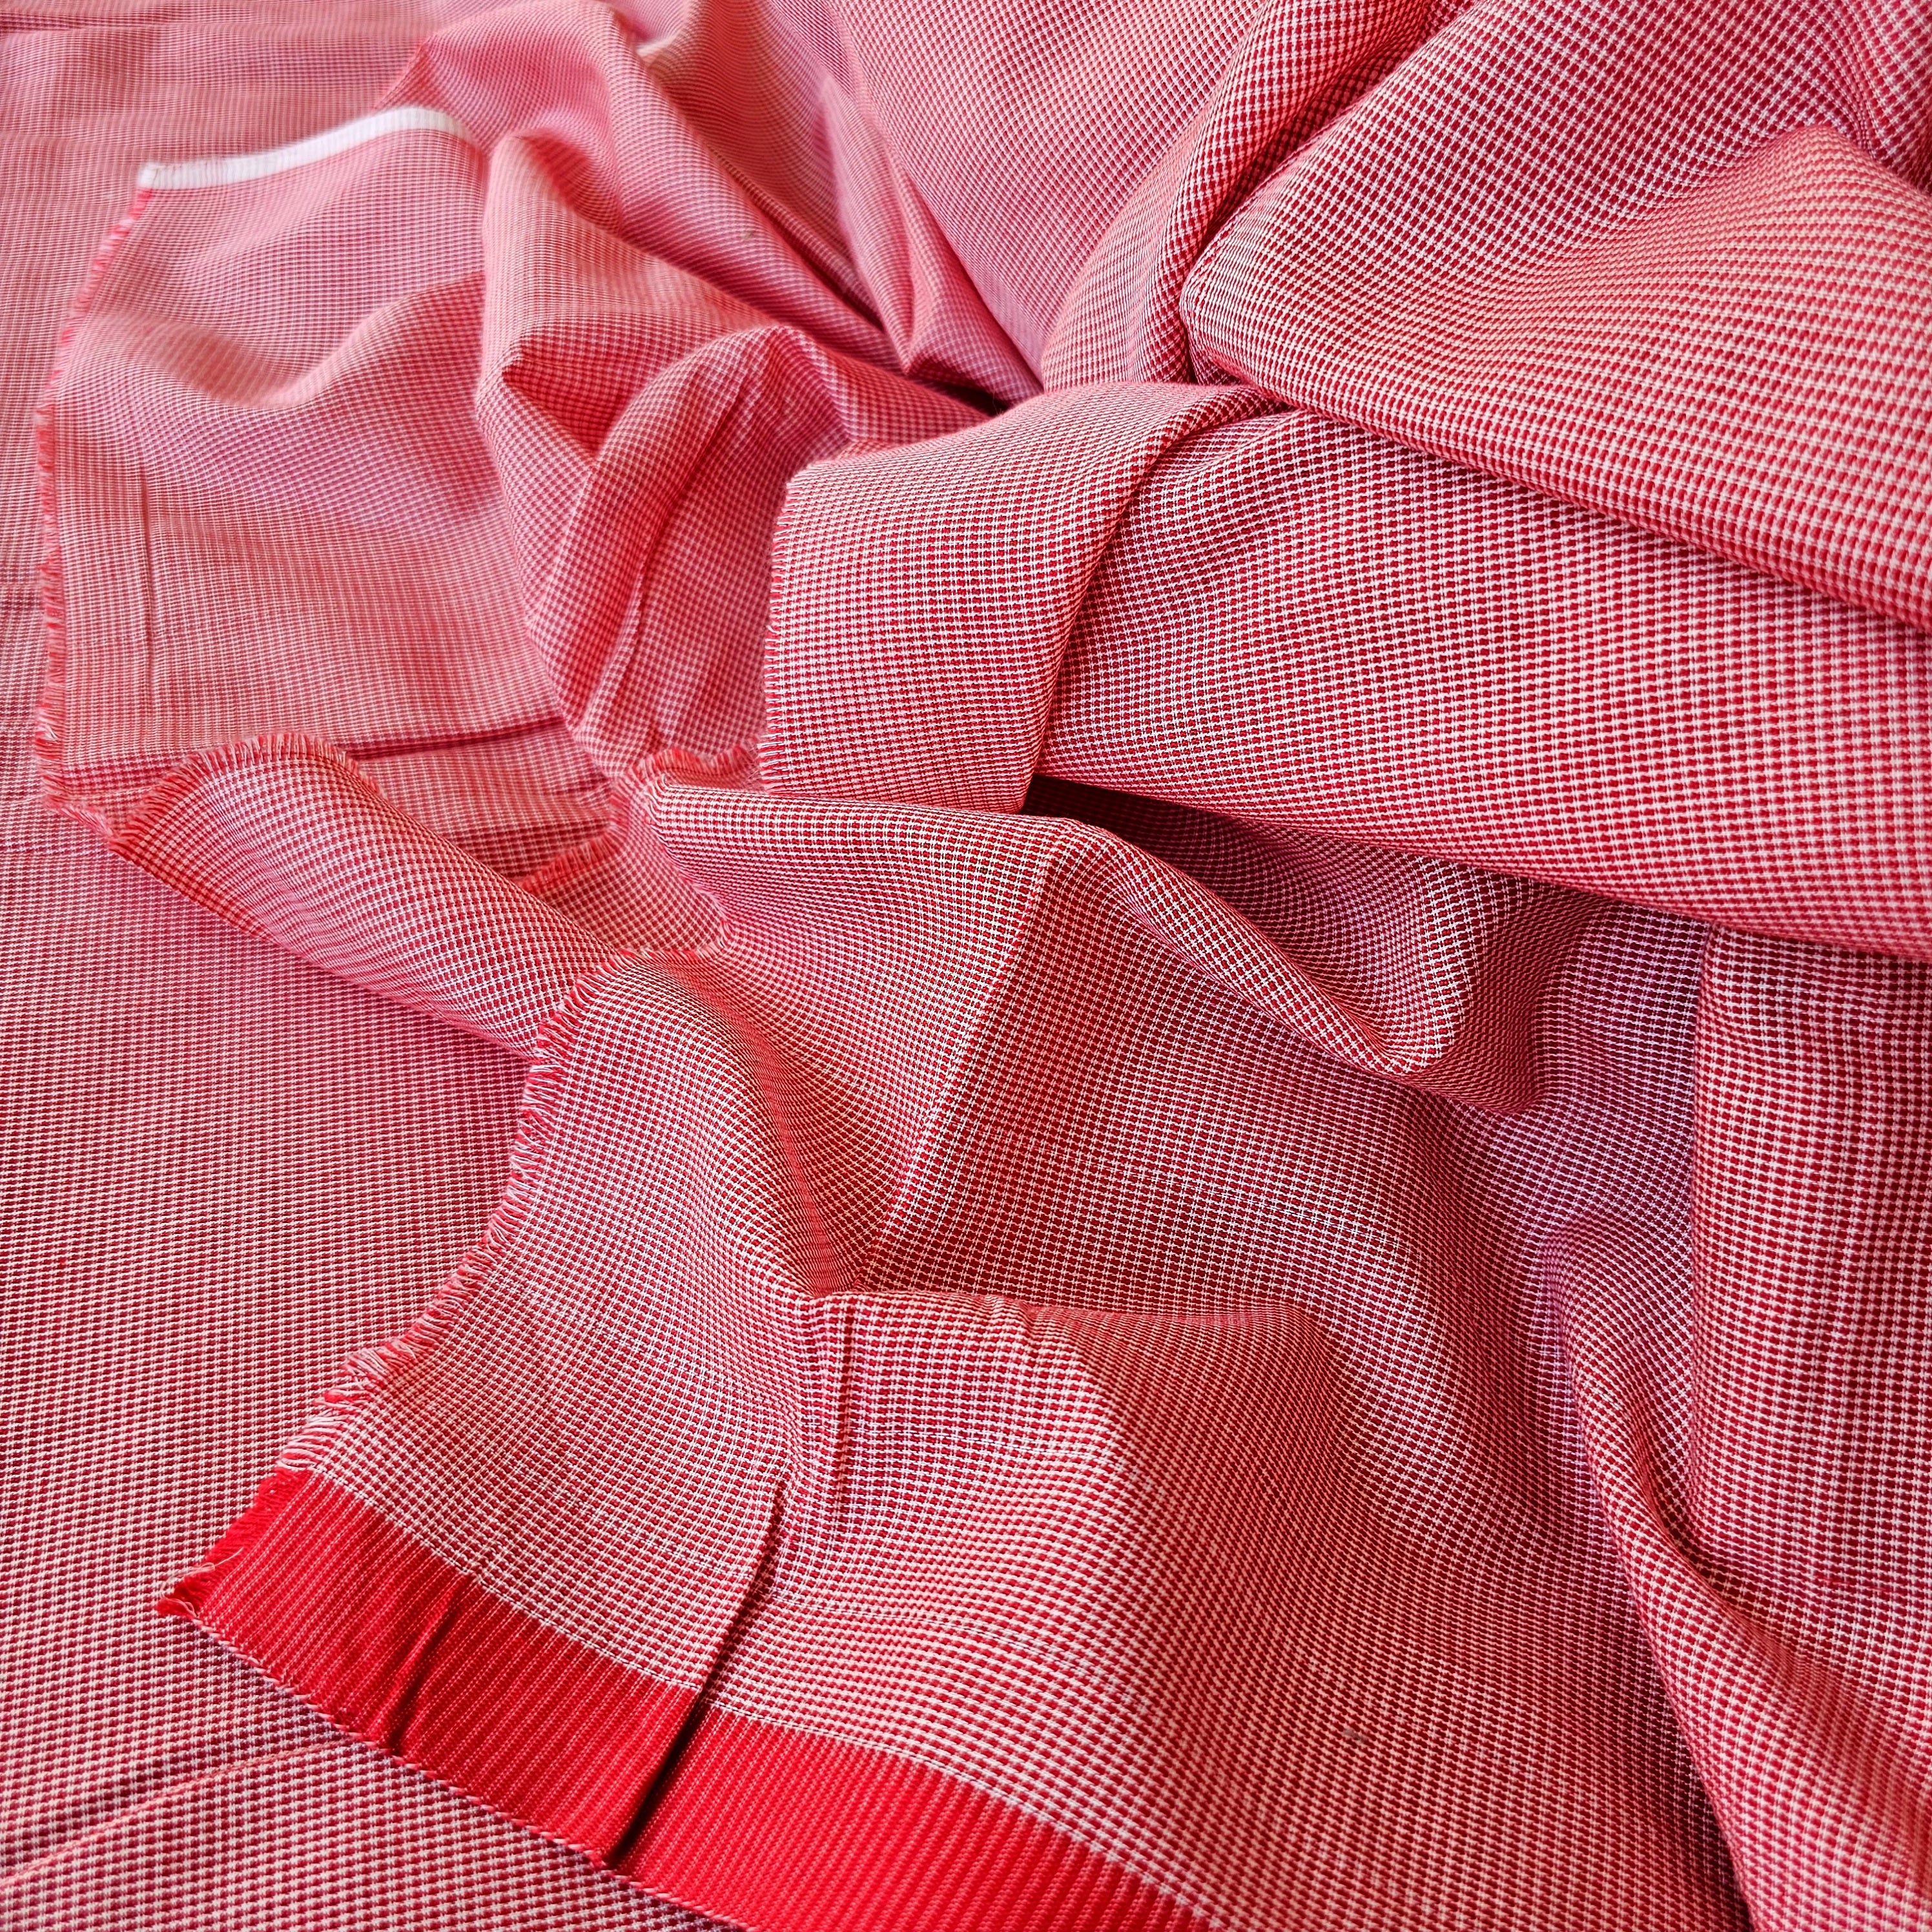 Red & White fine Checks Fabric in pure Cotton Texture.